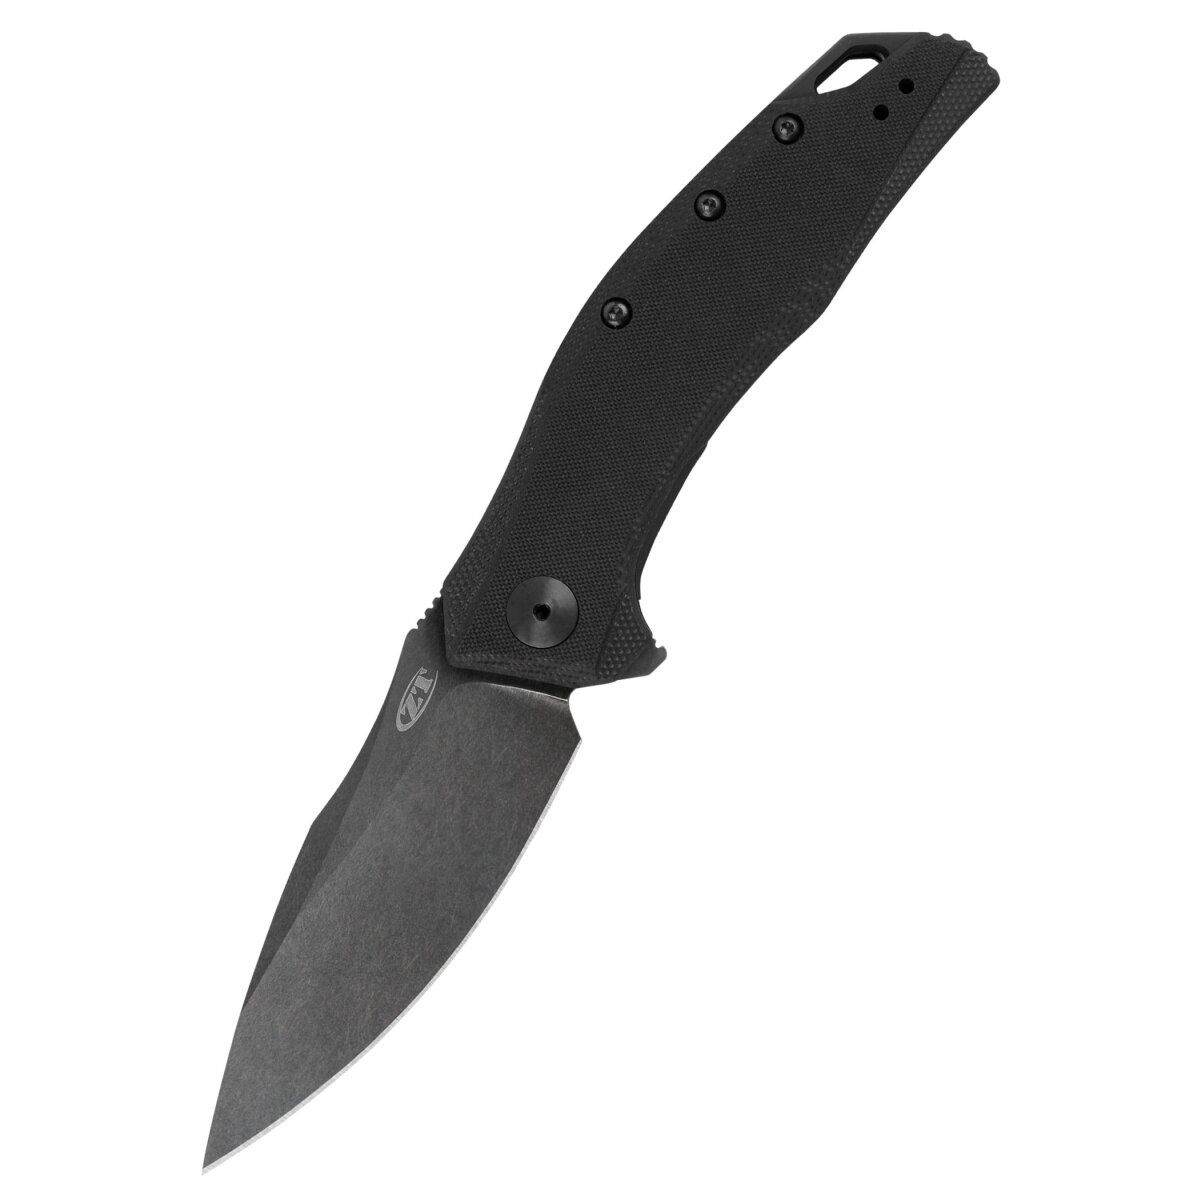 Pocket knife Zero Tolerance 0357BW, G10/20CV BW